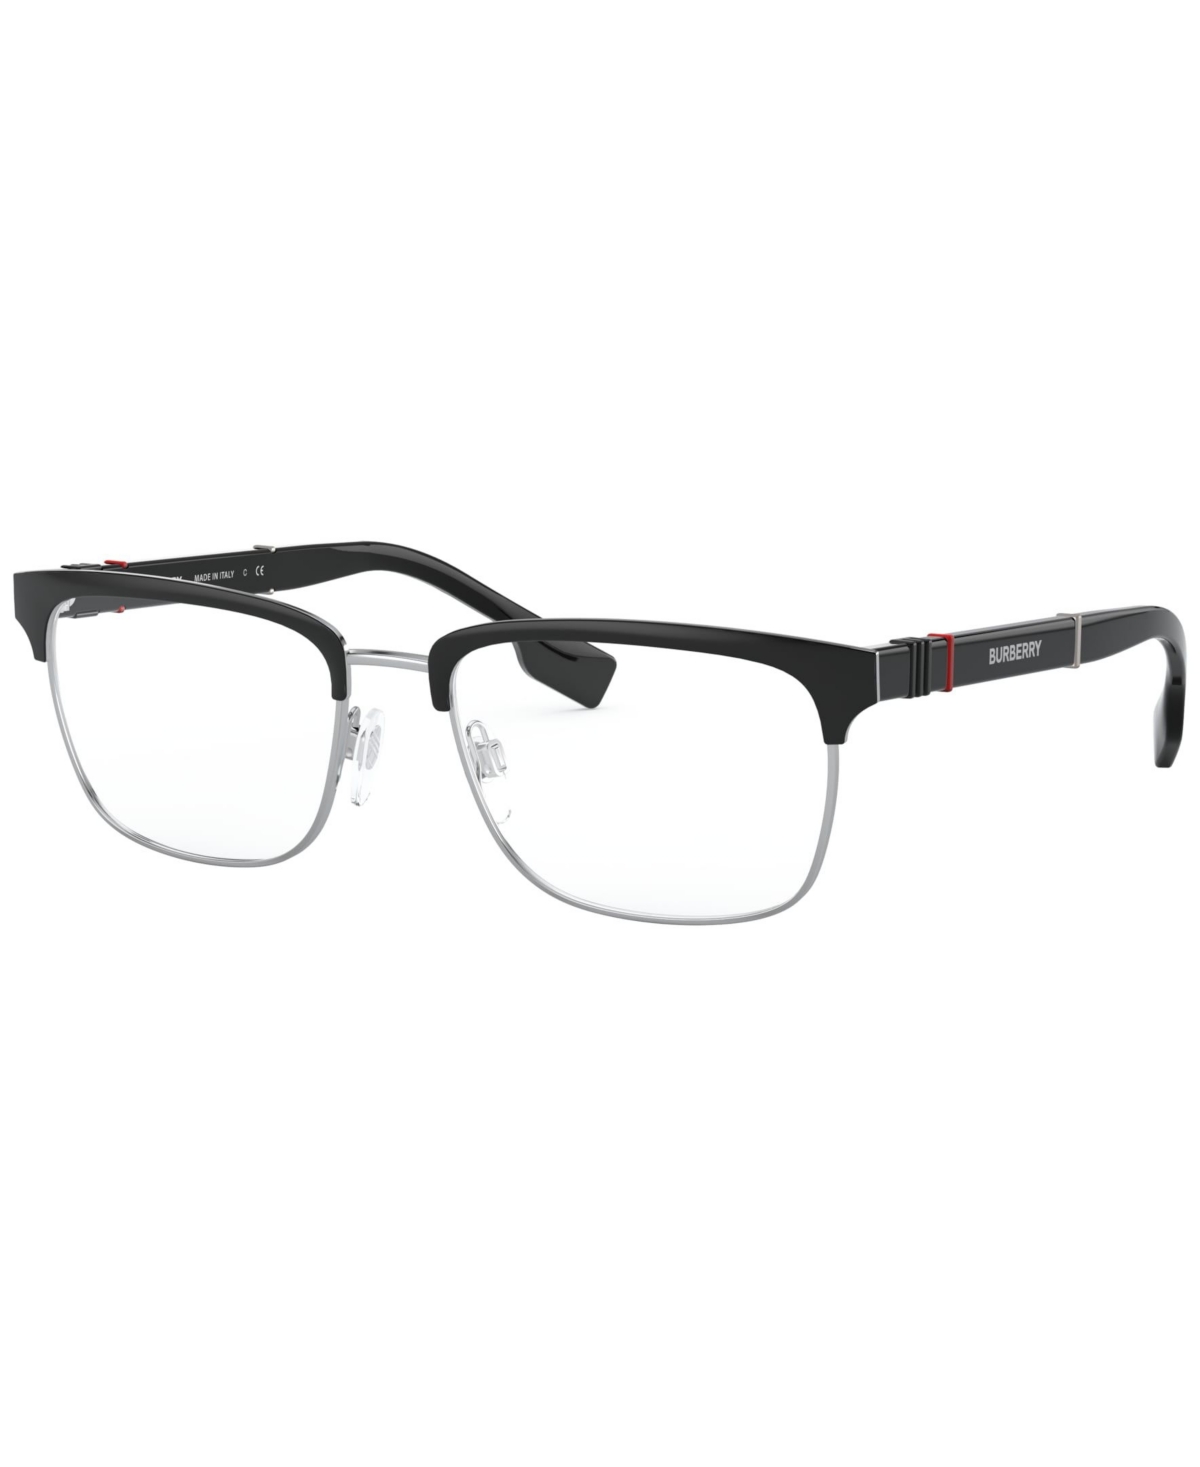 BE1348 Men's Rectangle Eyeglasses - Black